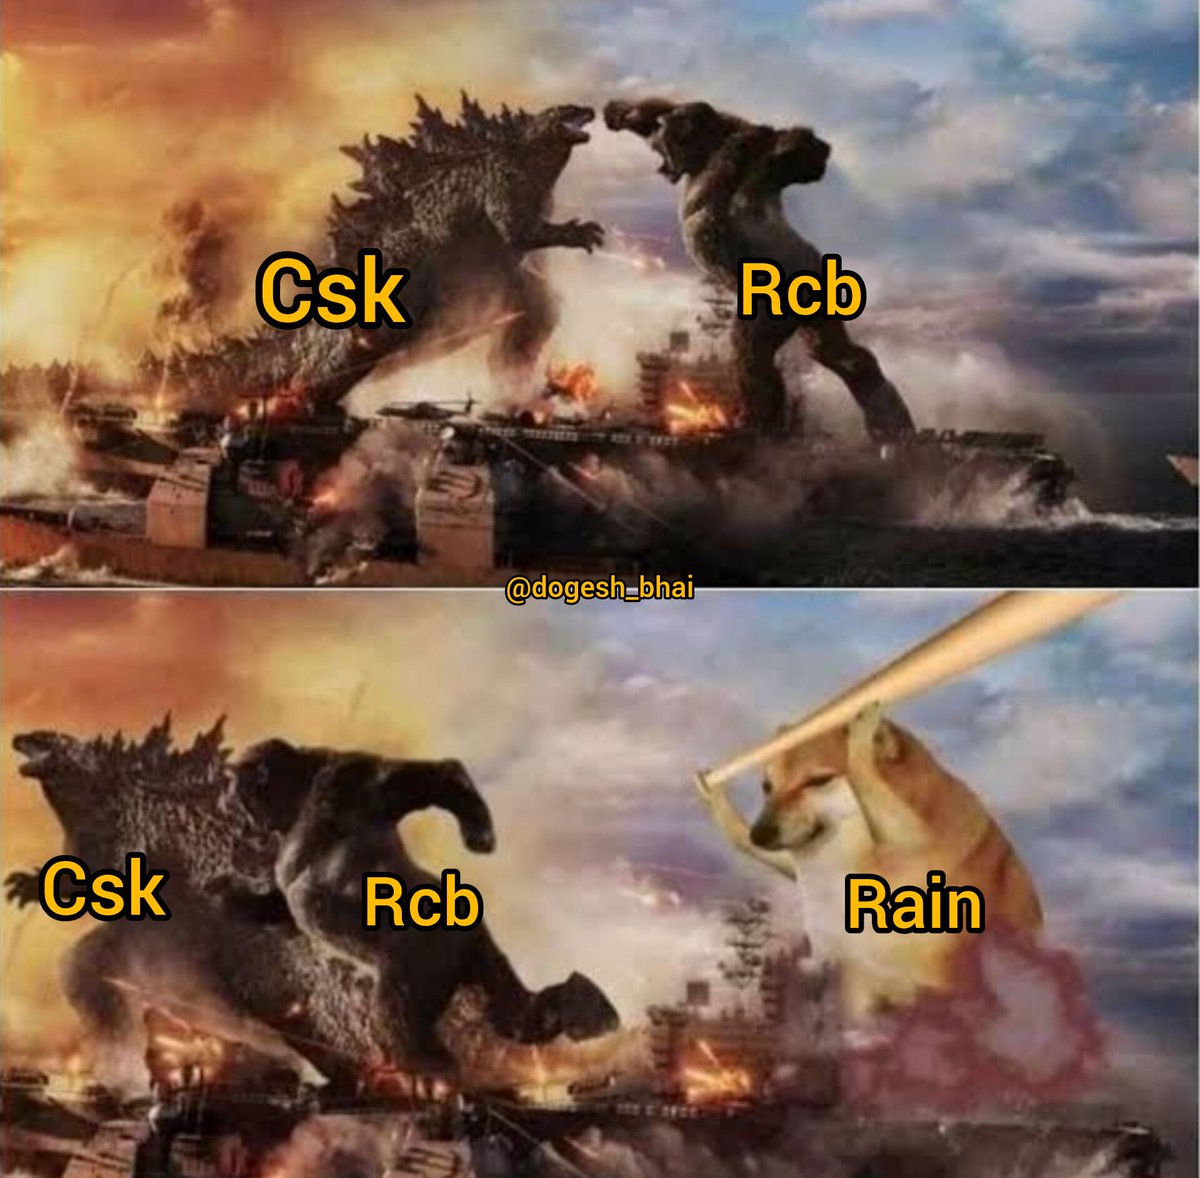 Rain 😭 #RCBvsCSK